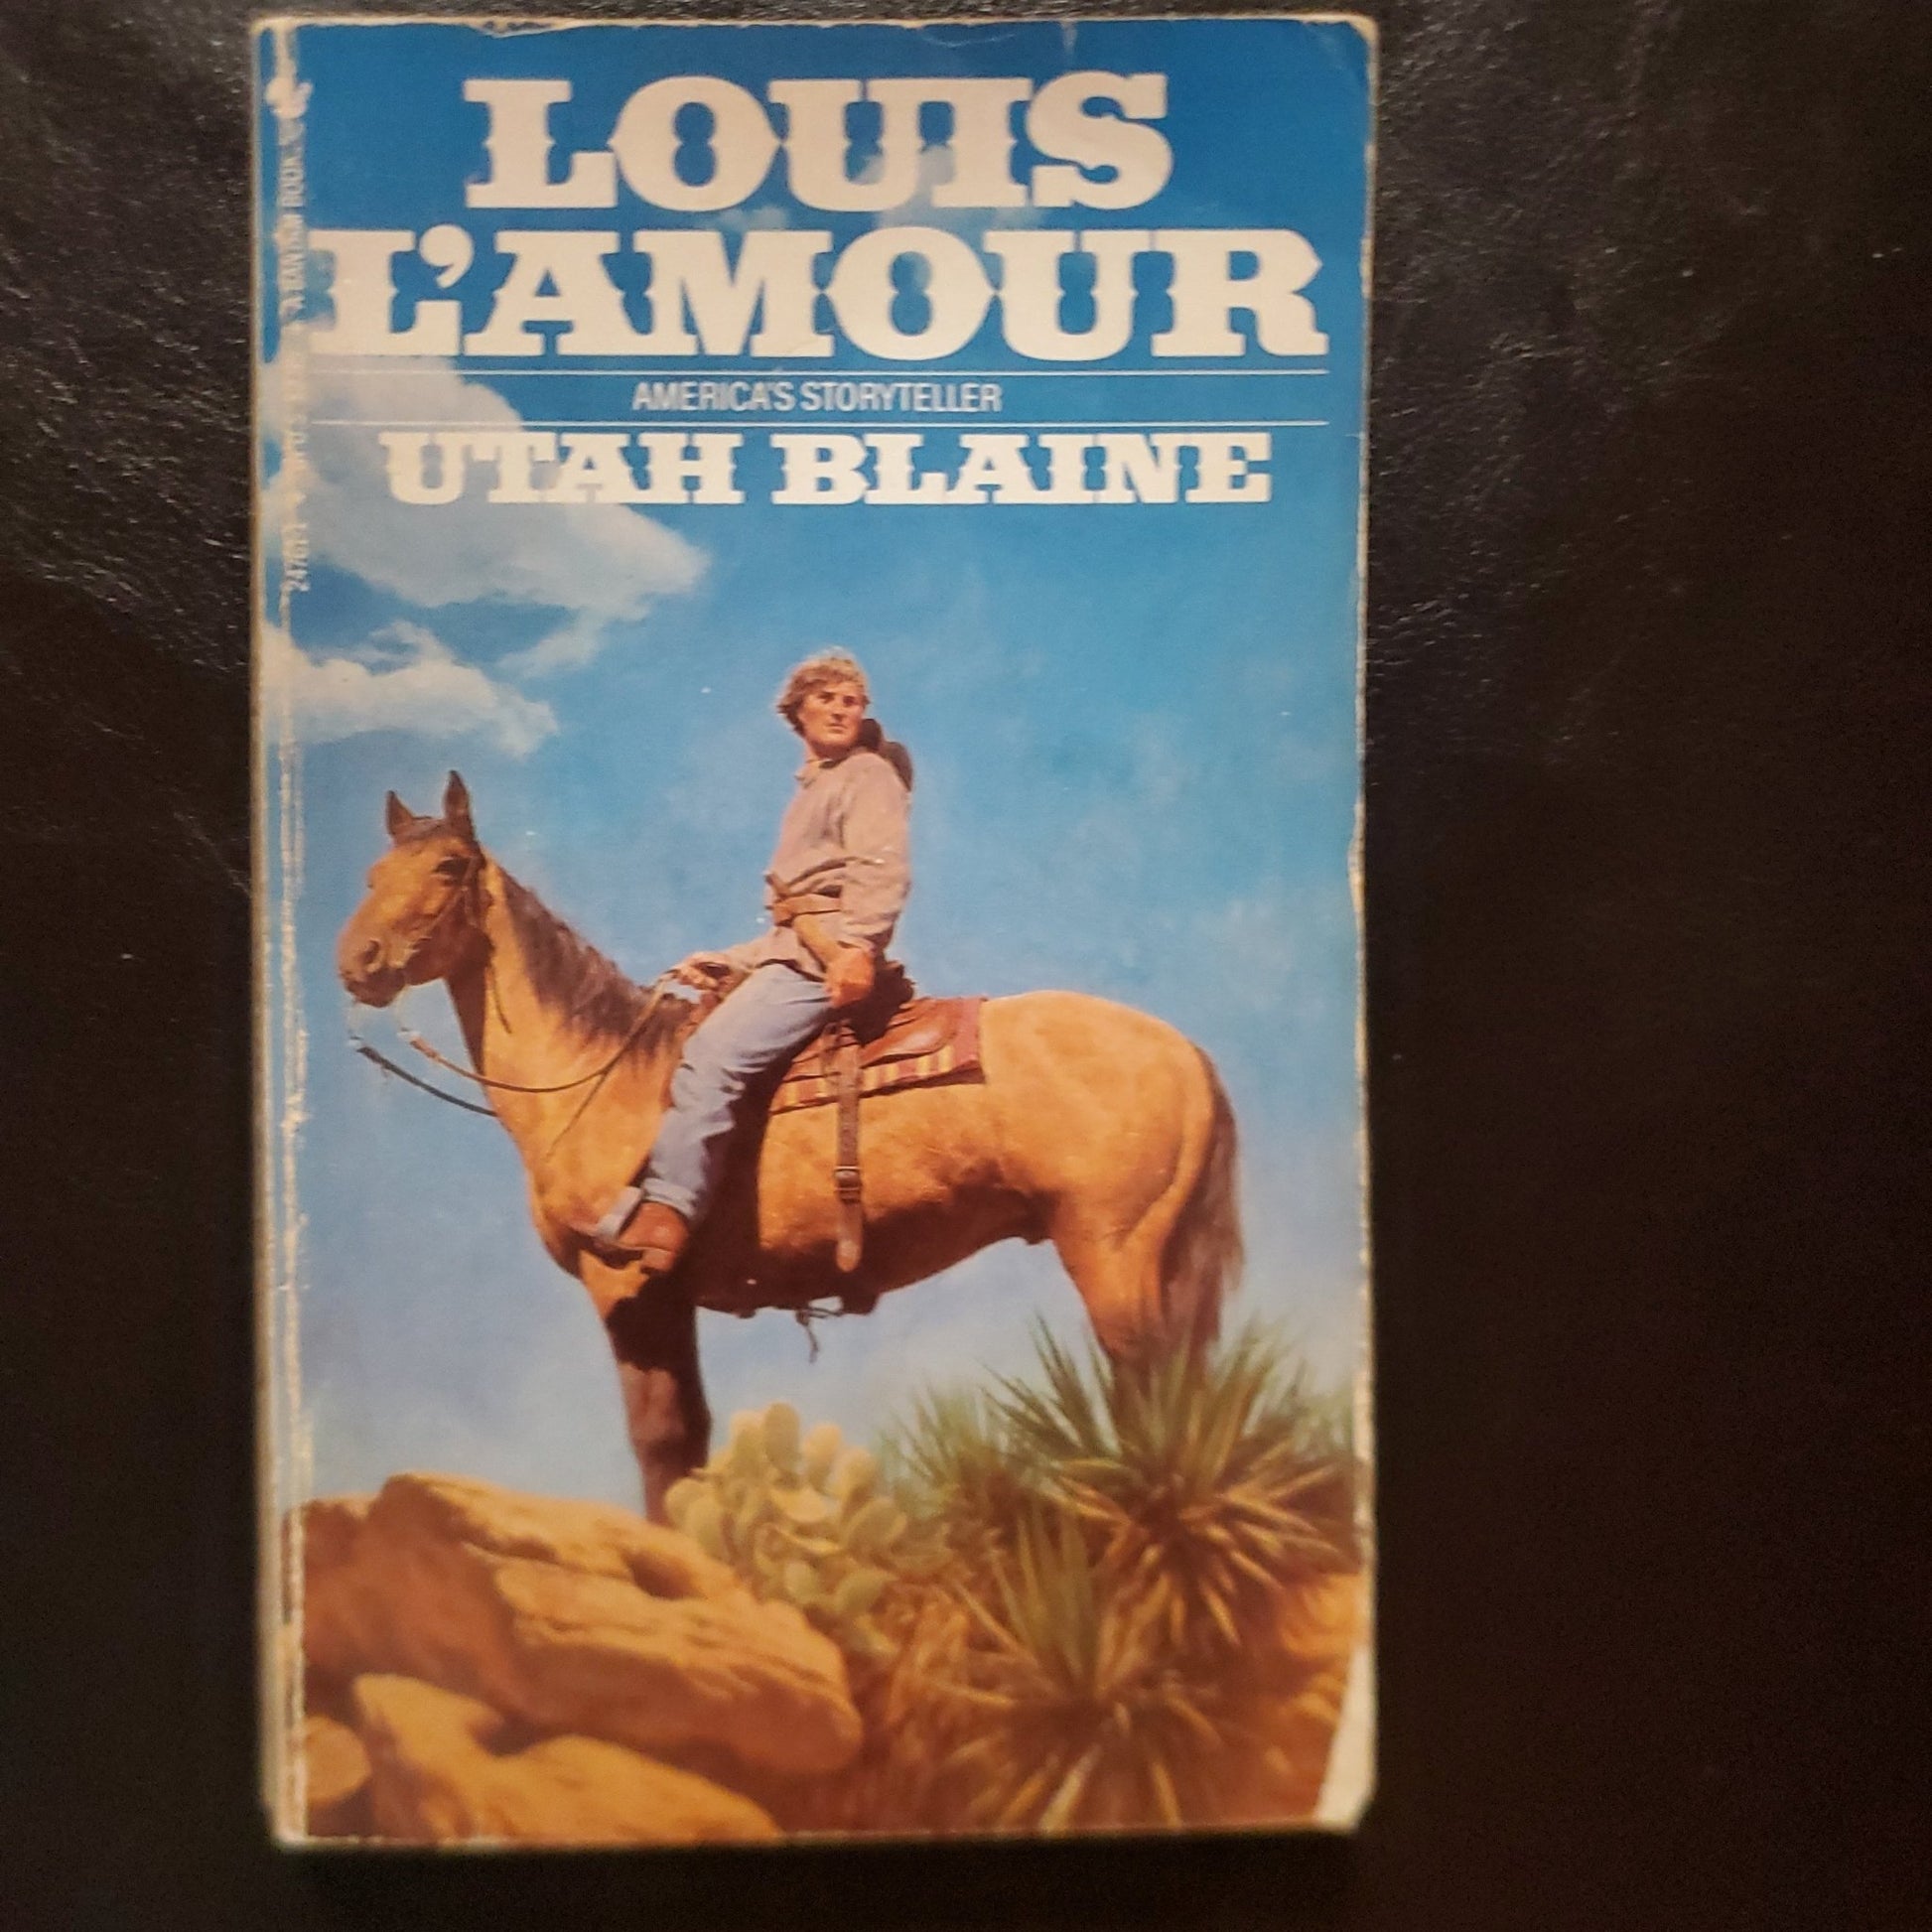 Utah Blaine - [ash-ling] Booksellers